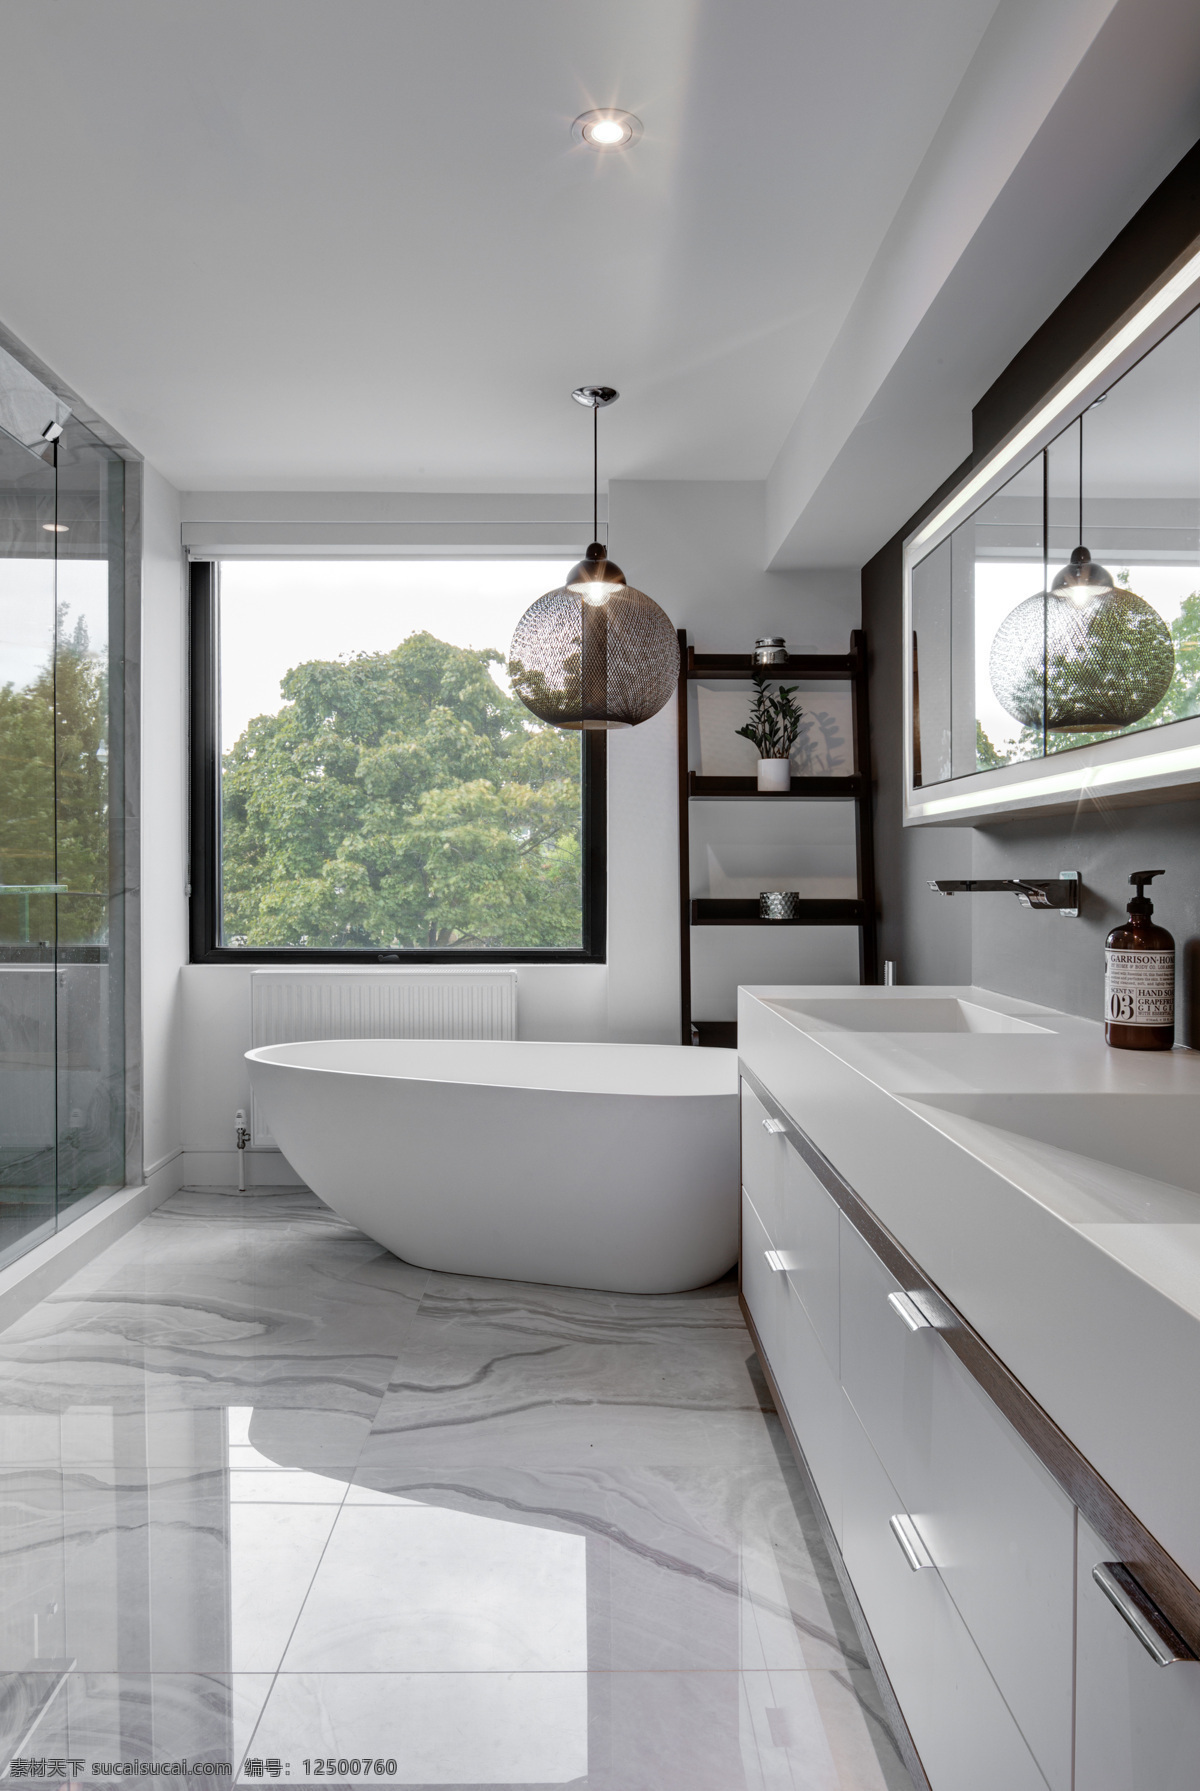 卫浴效果图 卫浴 浴室 瓷砖 瓷片 效果图 空间图